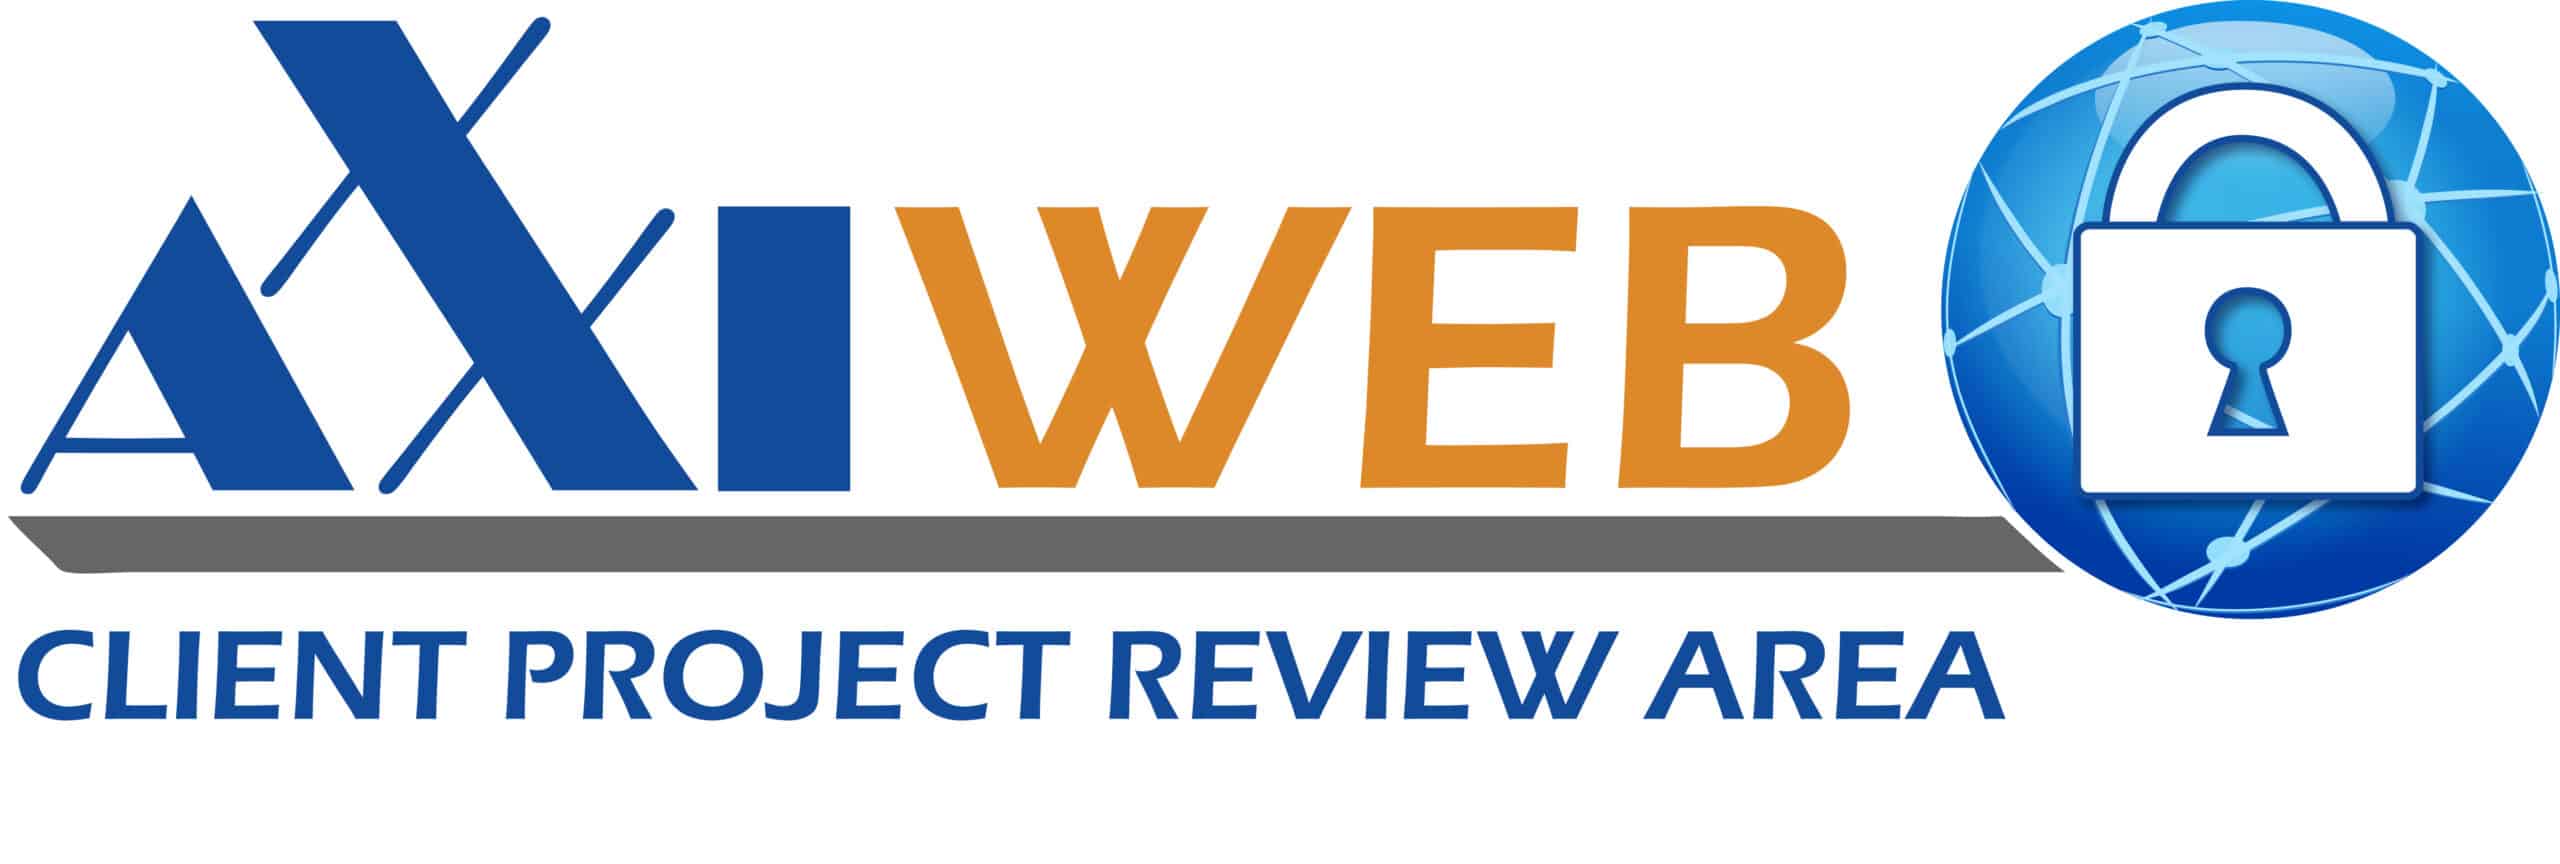 axxiem client review biotech website